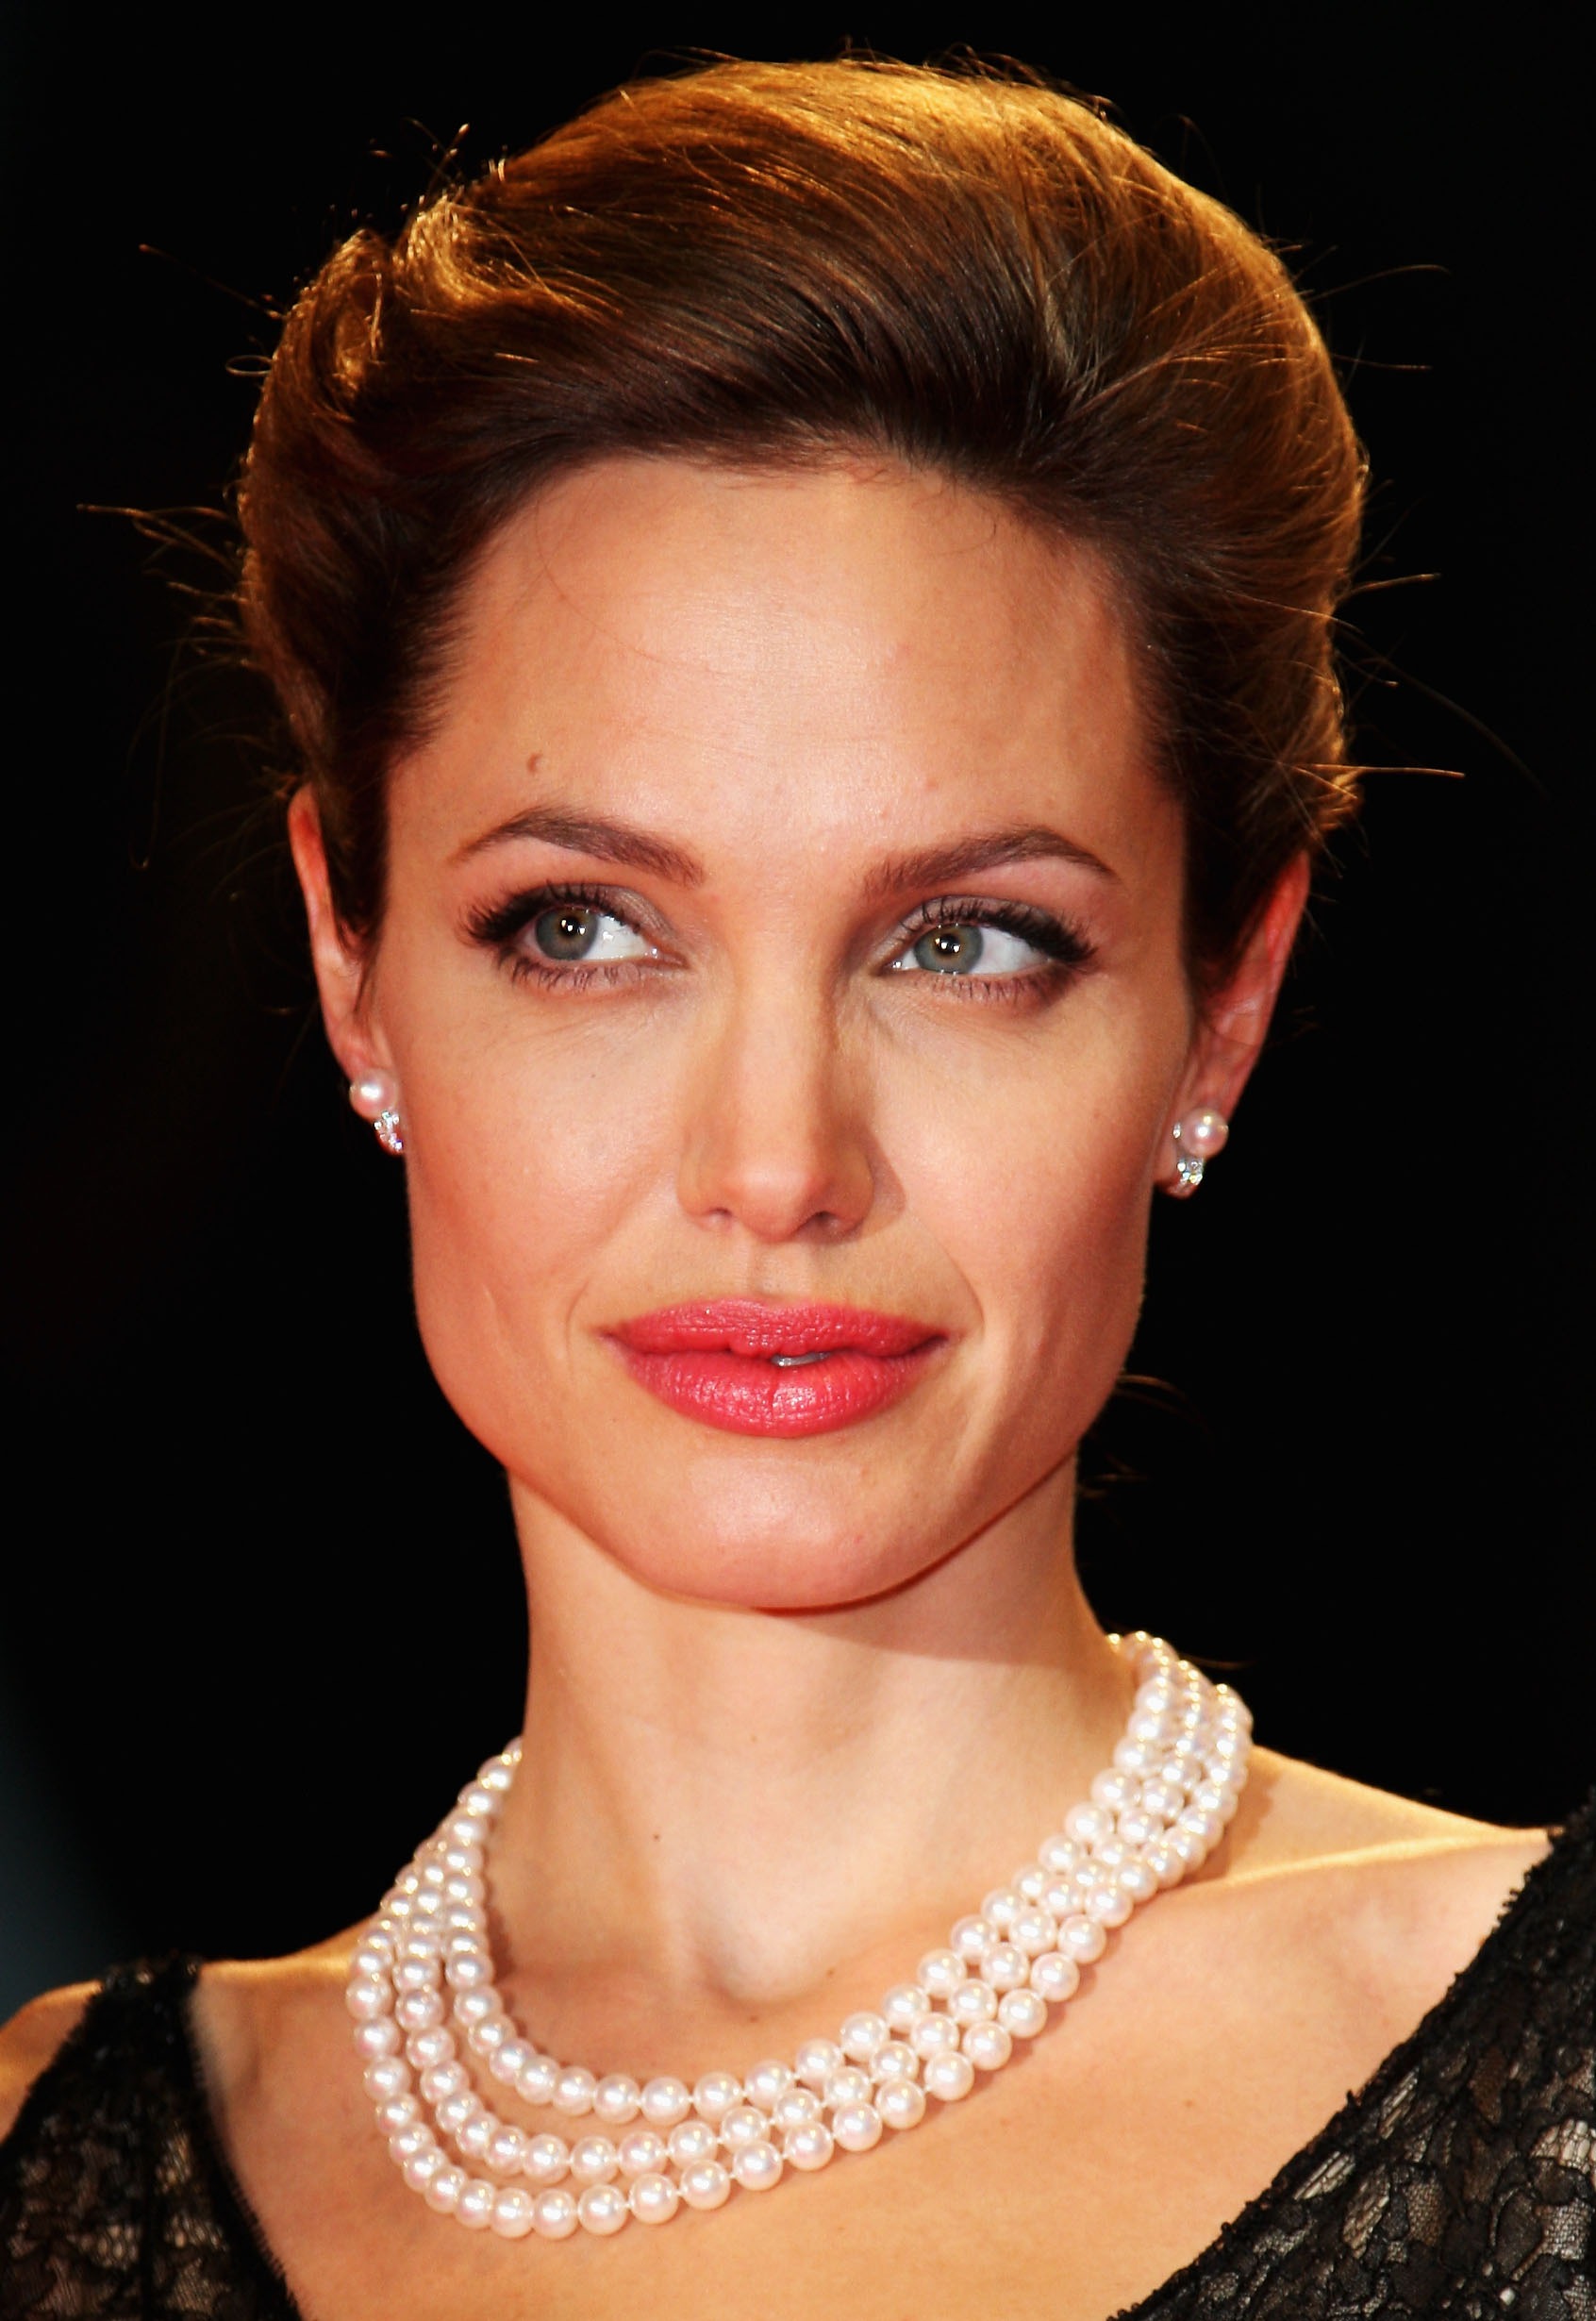 Angelina Jolie asiste al estreno de "The Assassination of Jesse James by the Coward Robert Ford" durante el quinto día del 64º Festival de Cine de Venecia en Venecia, Italia, el 2 de septiembre de 2007. | Foto: Getty Images